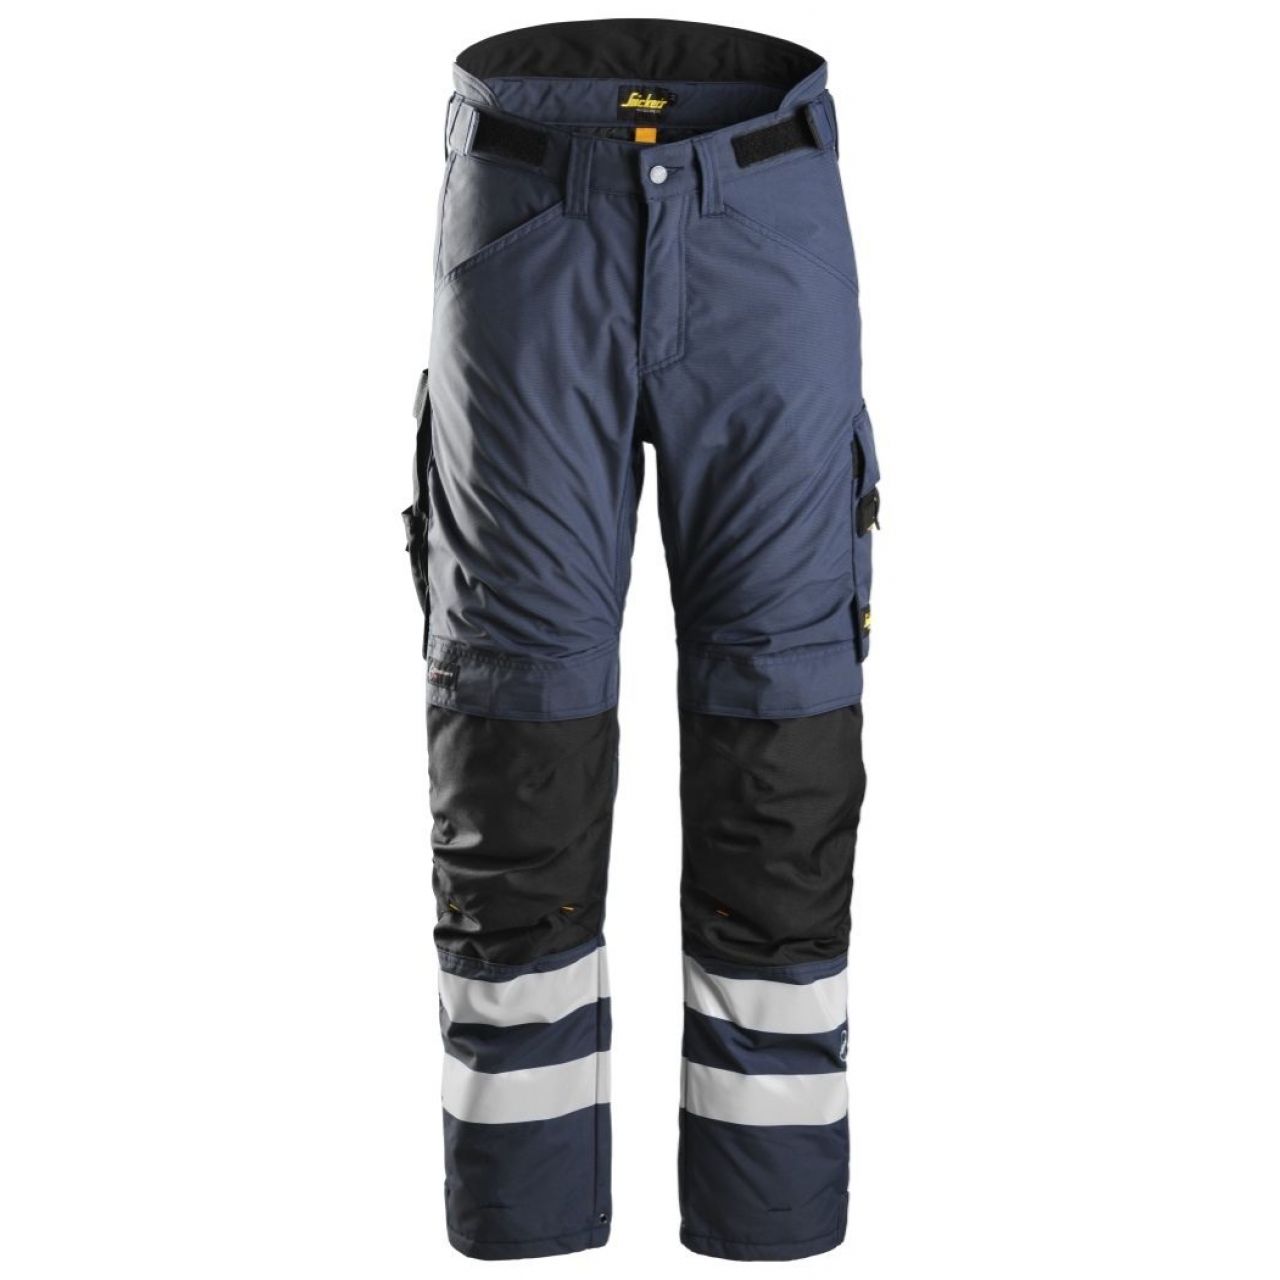 Pantalon aislante AllroundWork 37.5® azul marino-negro talla XL